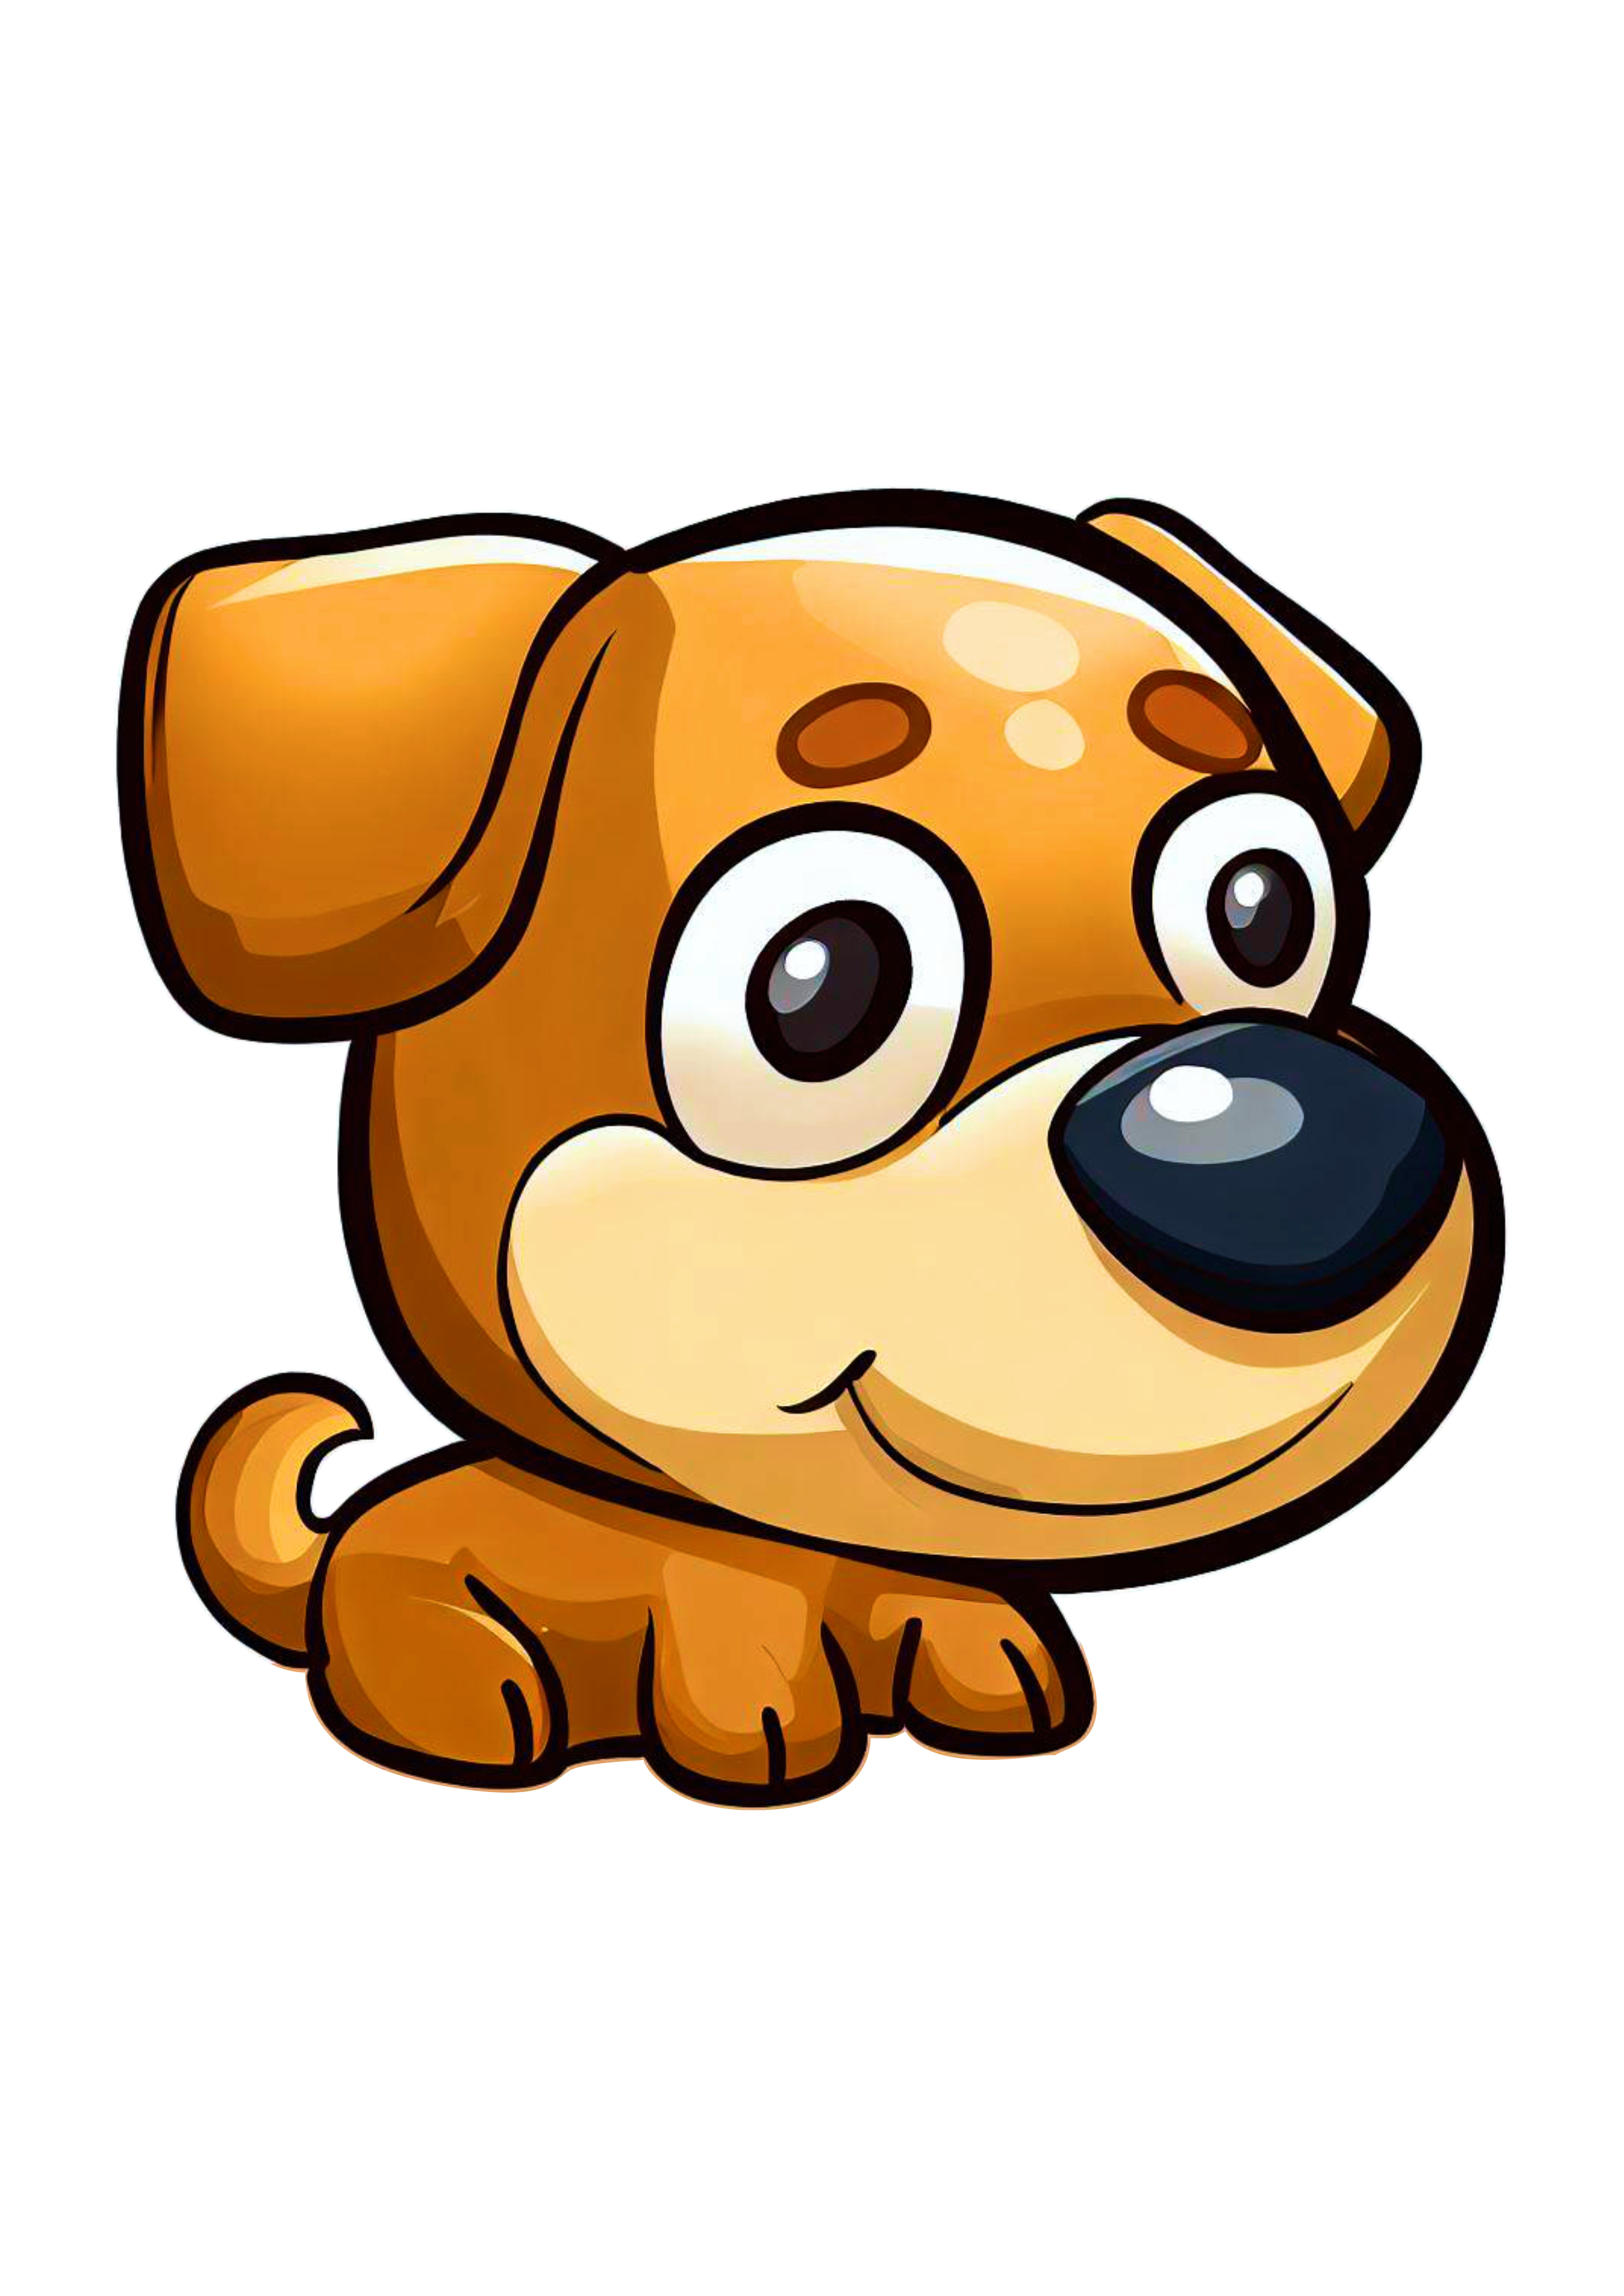 Cachorrinho sapeca fofinho cute desenho simples pet mascote png